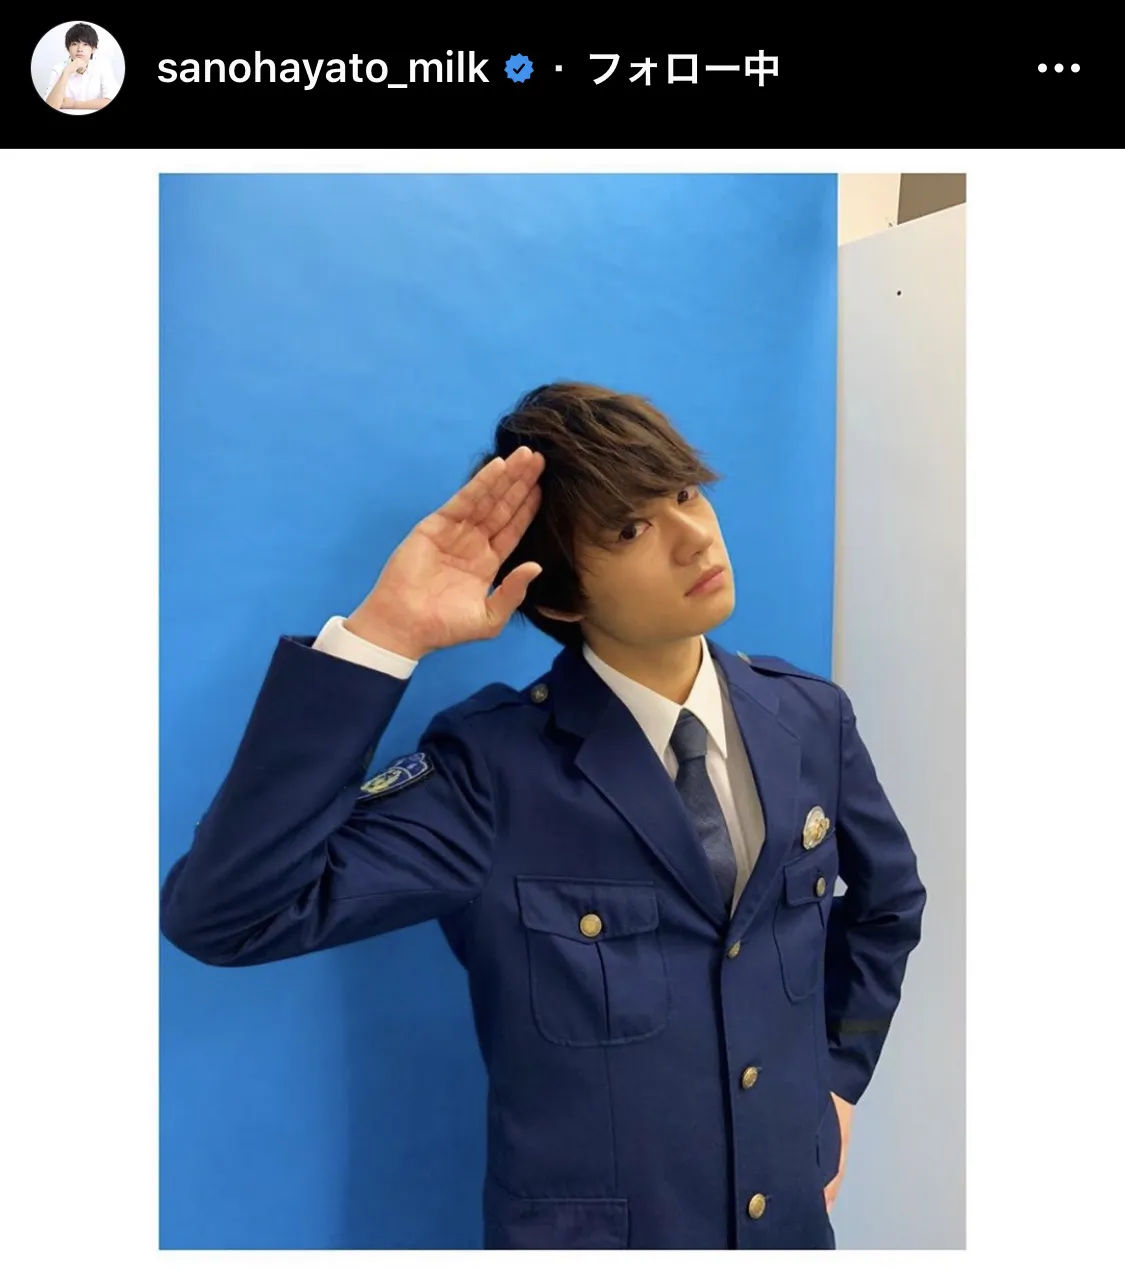 【写真を見る】警察官の制服を身にまとい敬礼する佐野勇斗